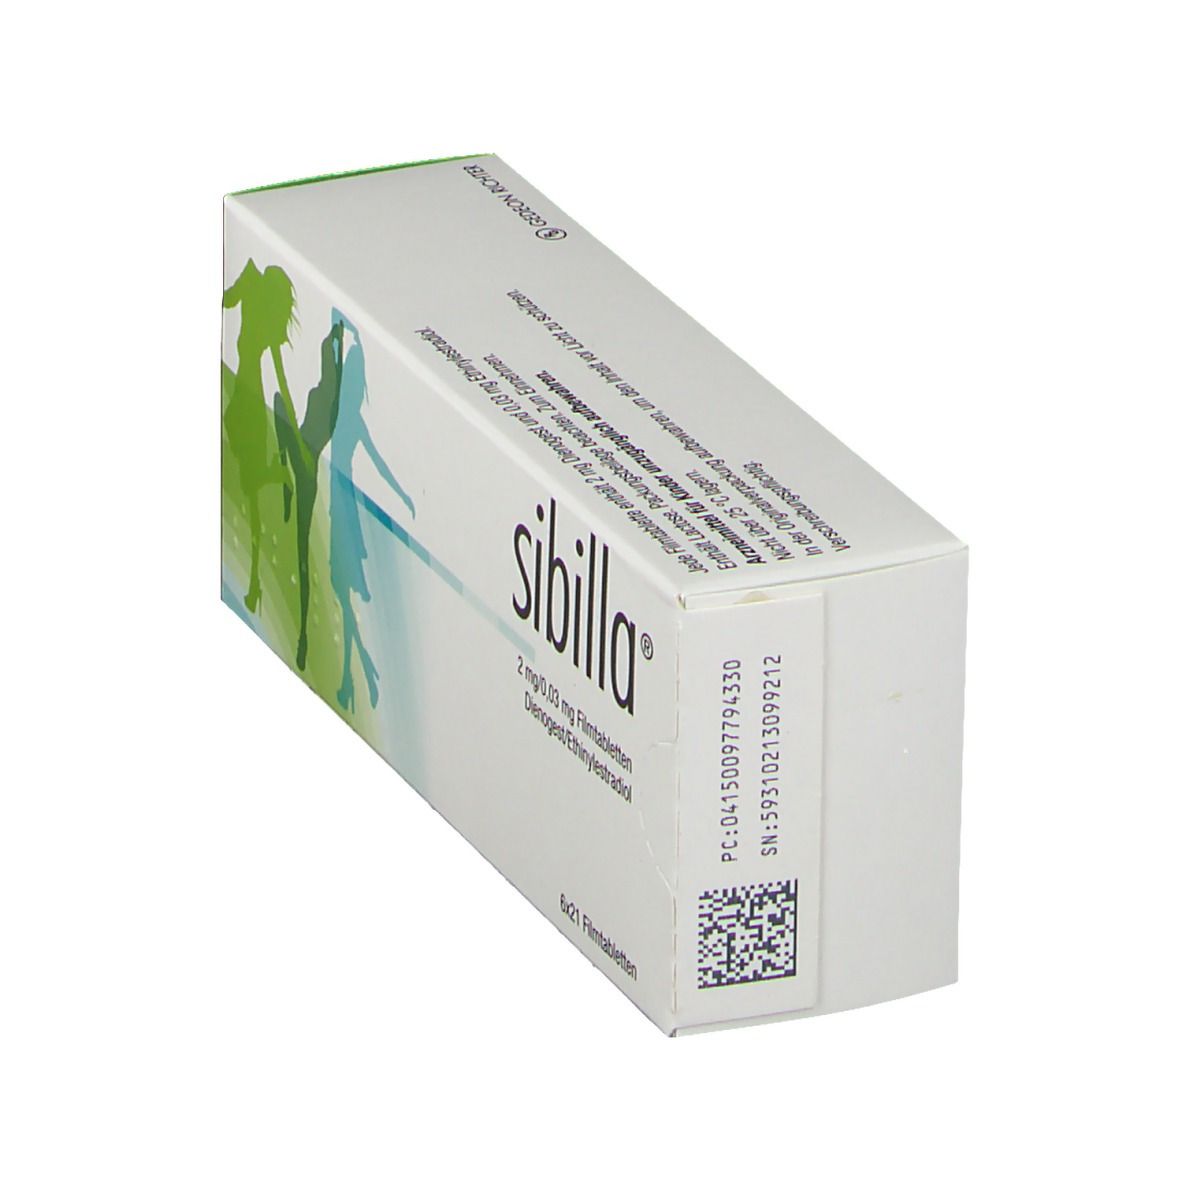 sibilla® 2 mg/0,03 mg